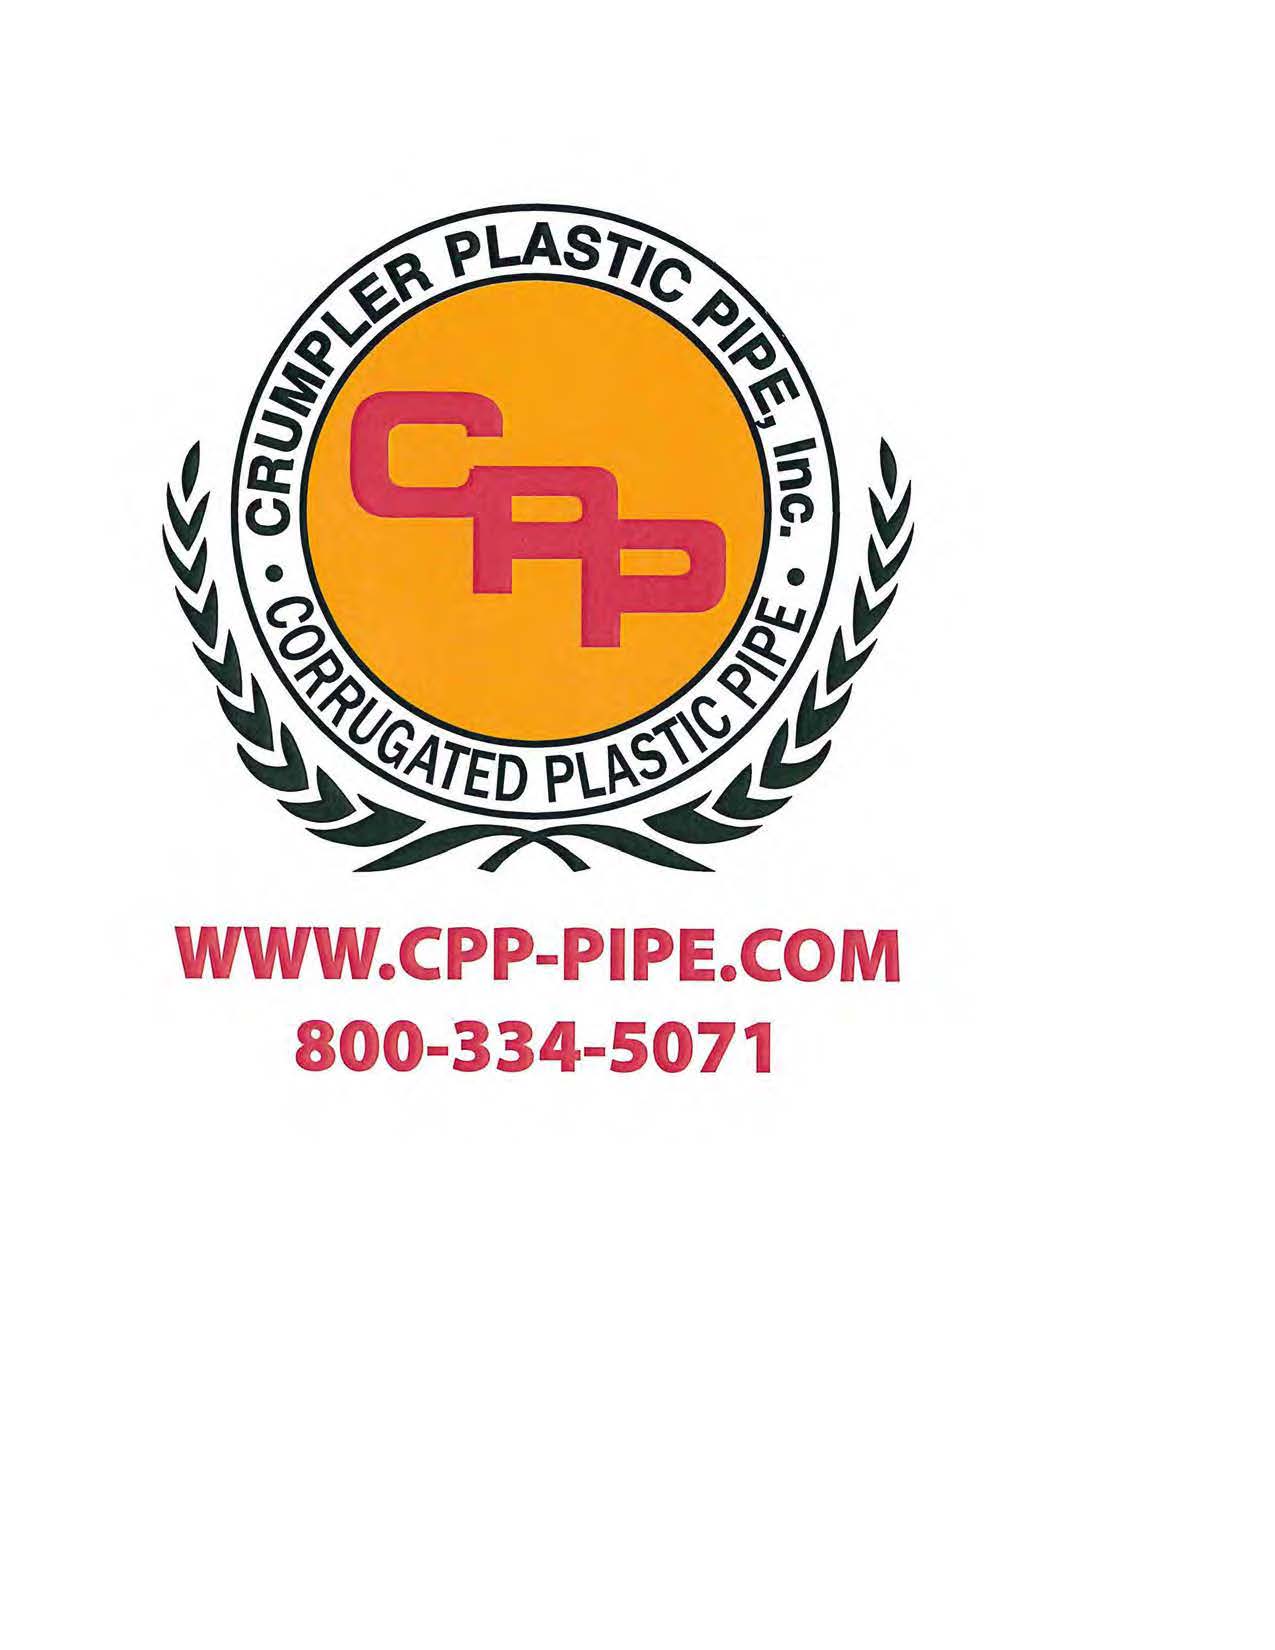 Crumpler Plastic Pipe, Inc